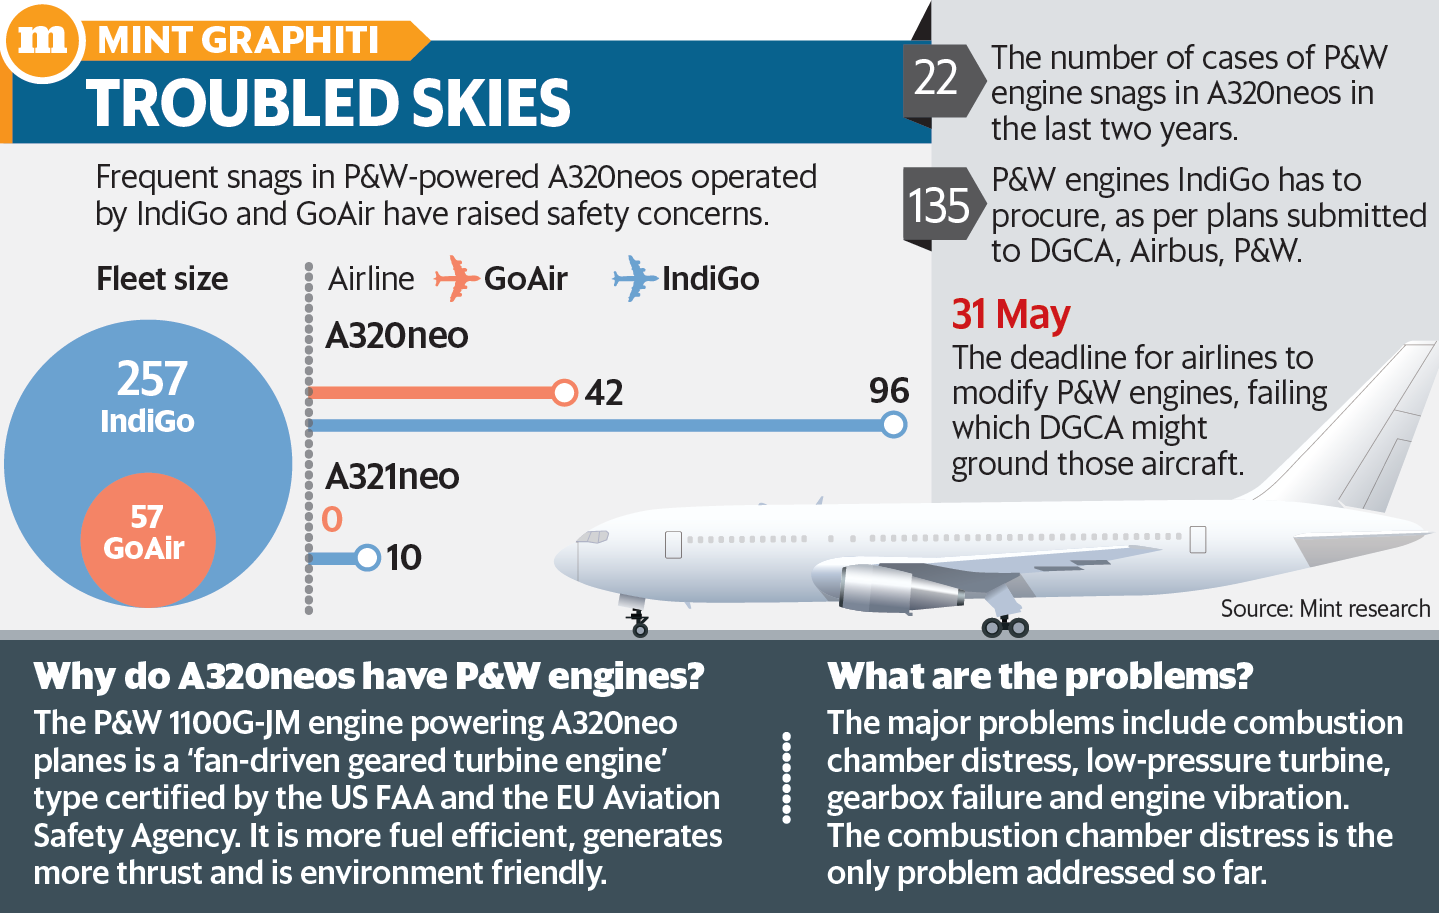 根据提交给DGCA，空客和P＆W的计划，IndiGo将必须完成多达135台发动机的采购，并在截止日期之前更换所有旧发动机。